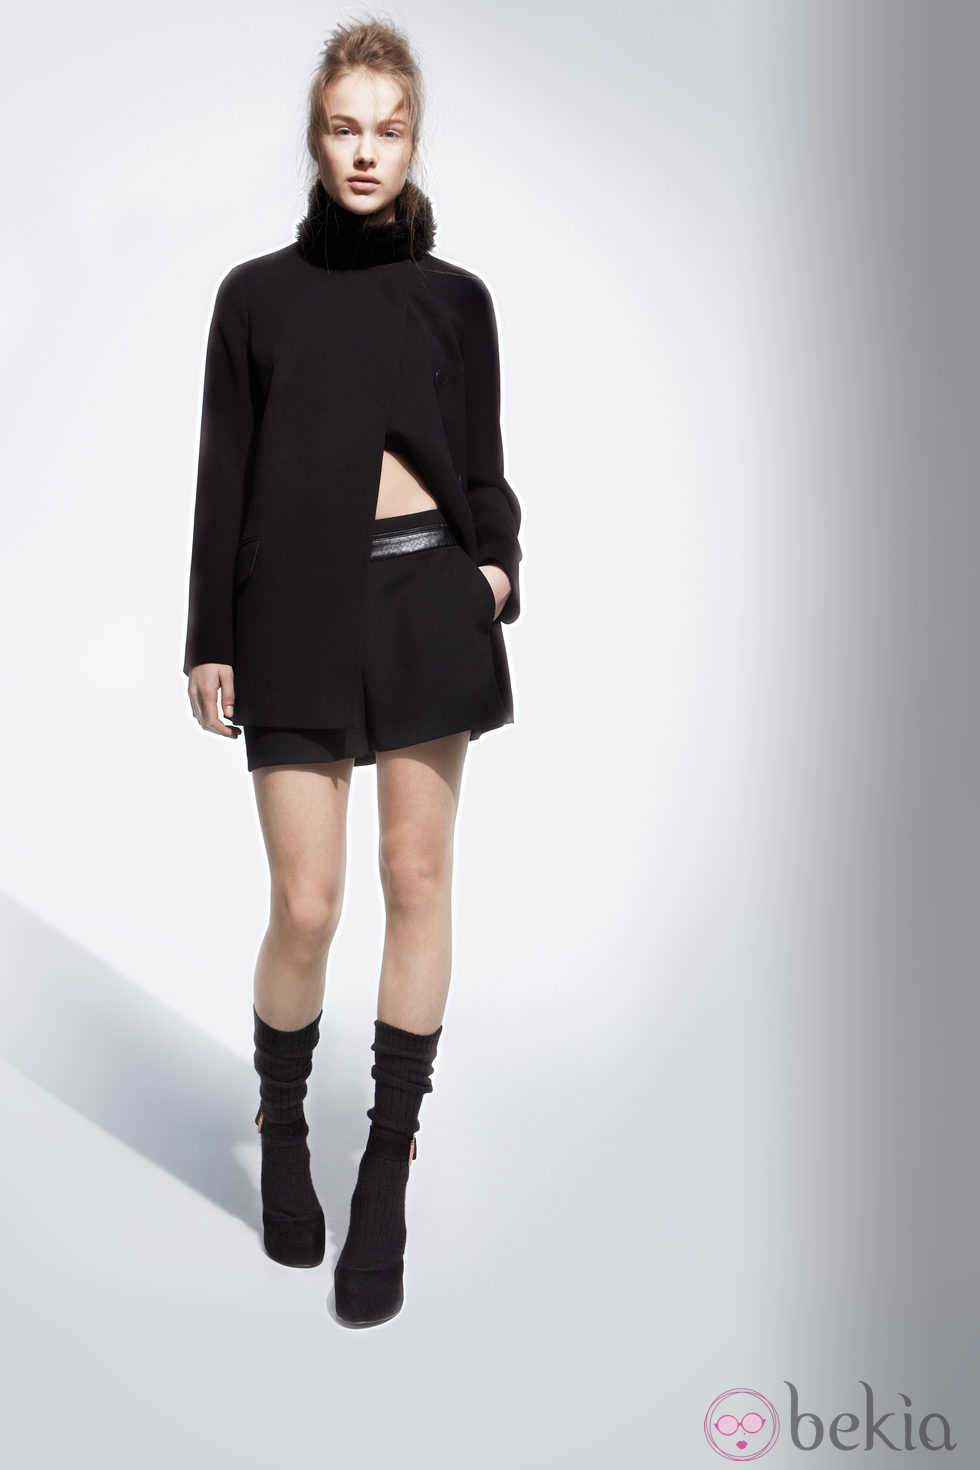 Falda negra de la colección otoño/invierno 2013/2014 de Adolfo Domínguez